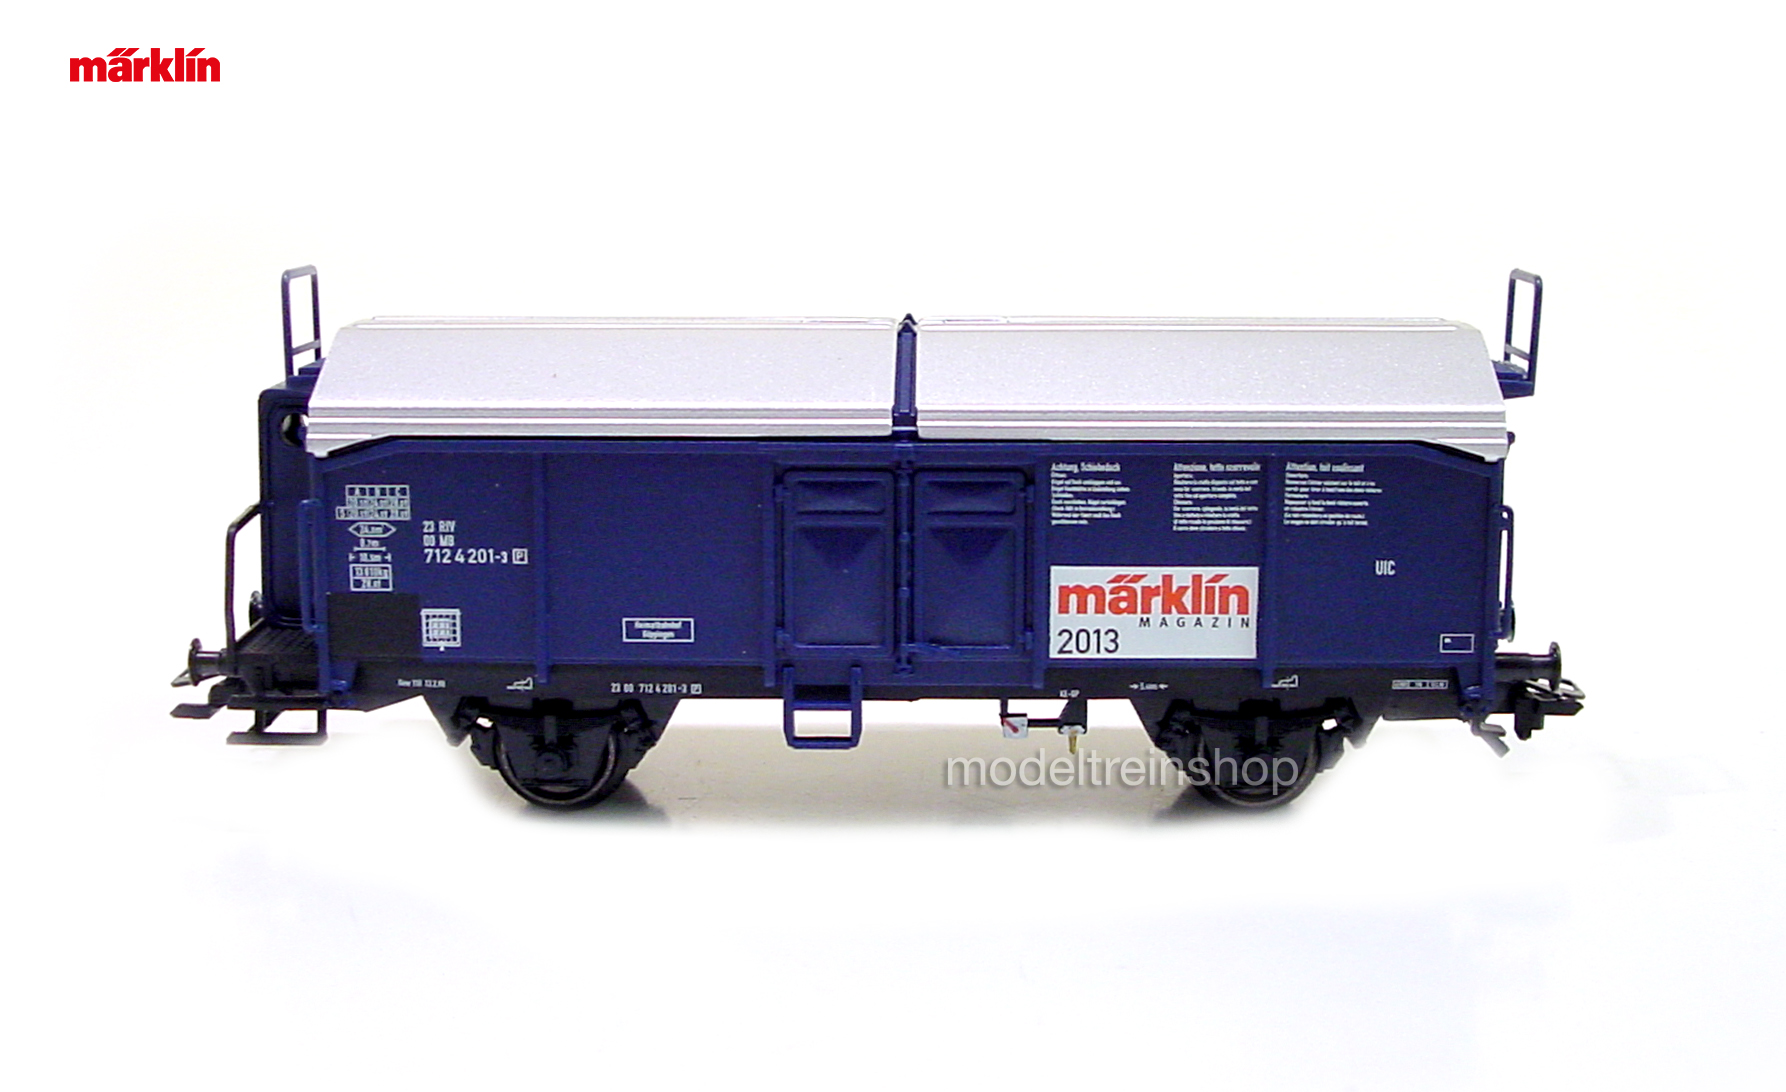 Marklin H0 48513 Marklin Magazin jaarwagen 2013 - Modeltreinshop